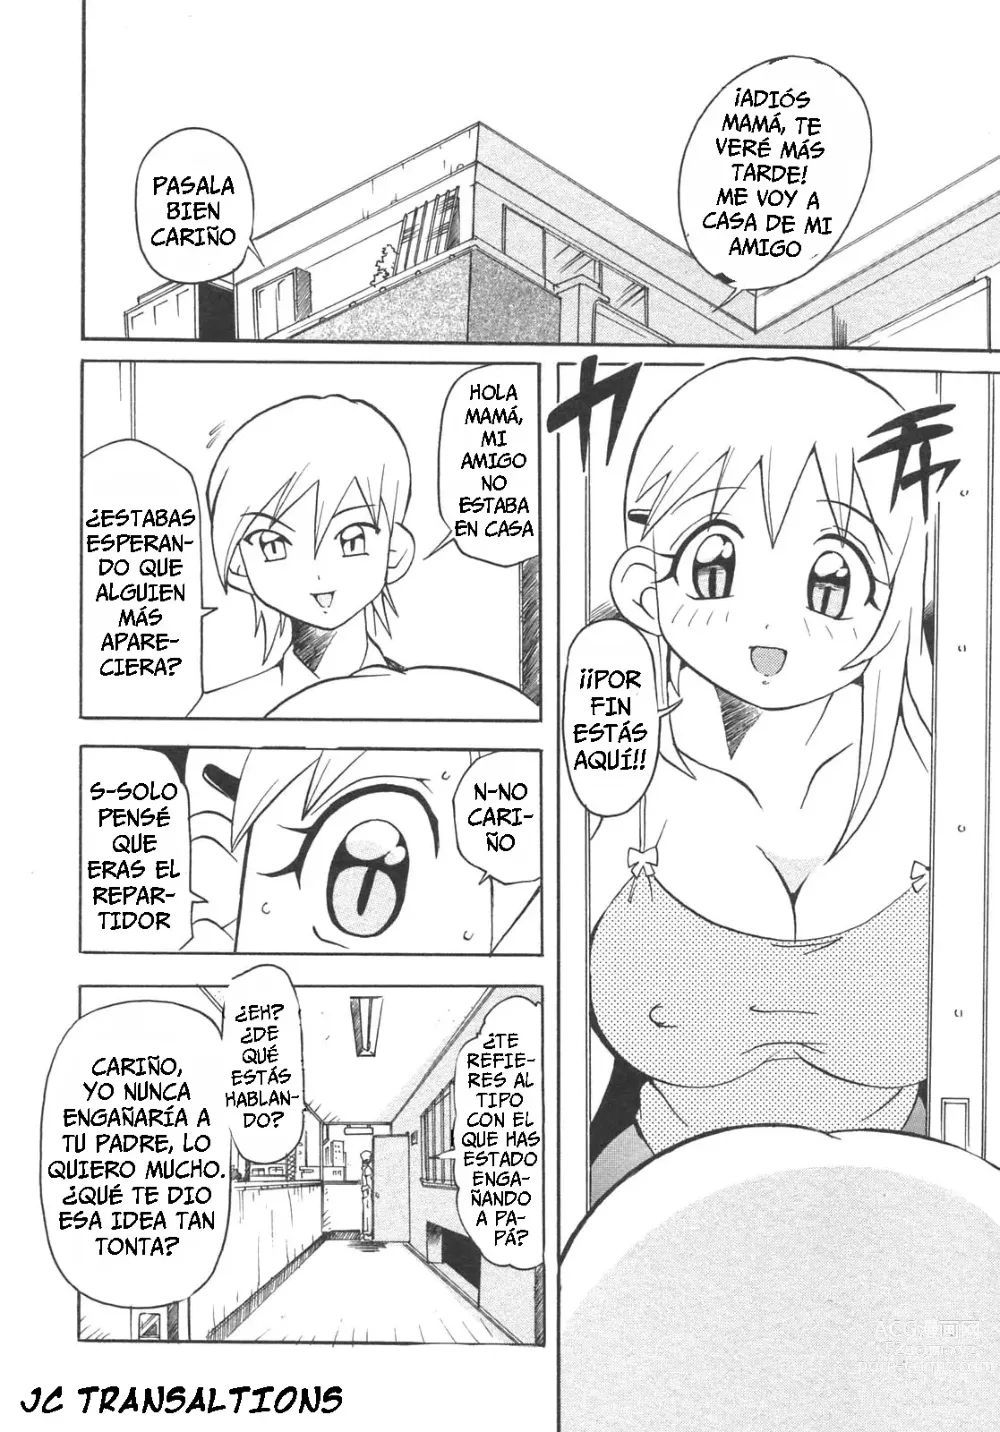 Page 2 of manga Castigando a Mamá